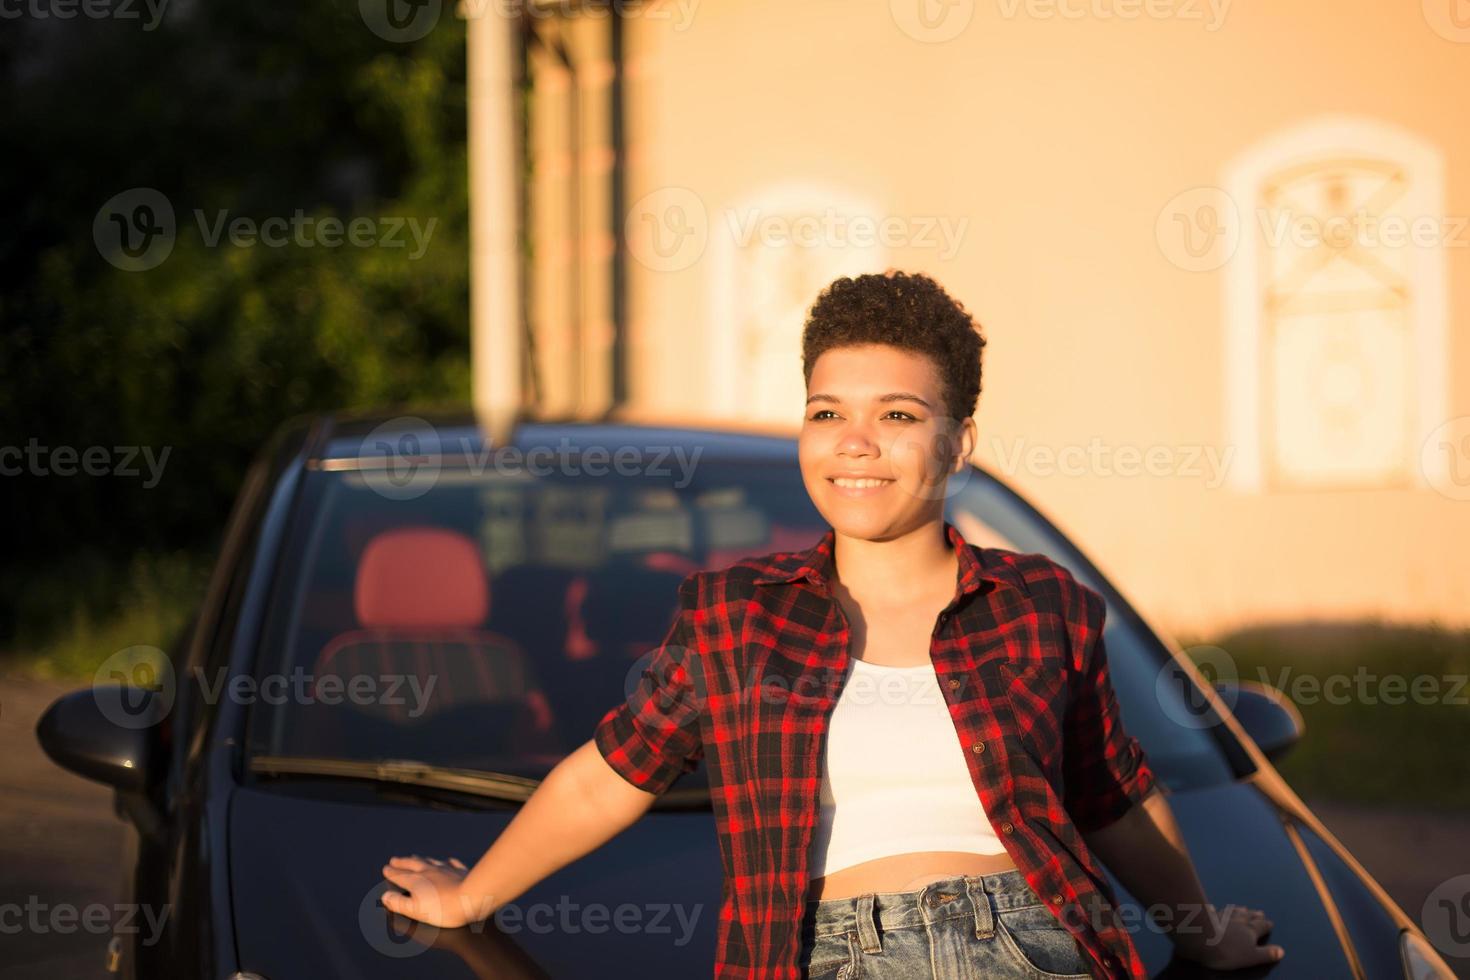 bella donna afroamericana con i capelli corti vicino alla macchina, lifestyle foto